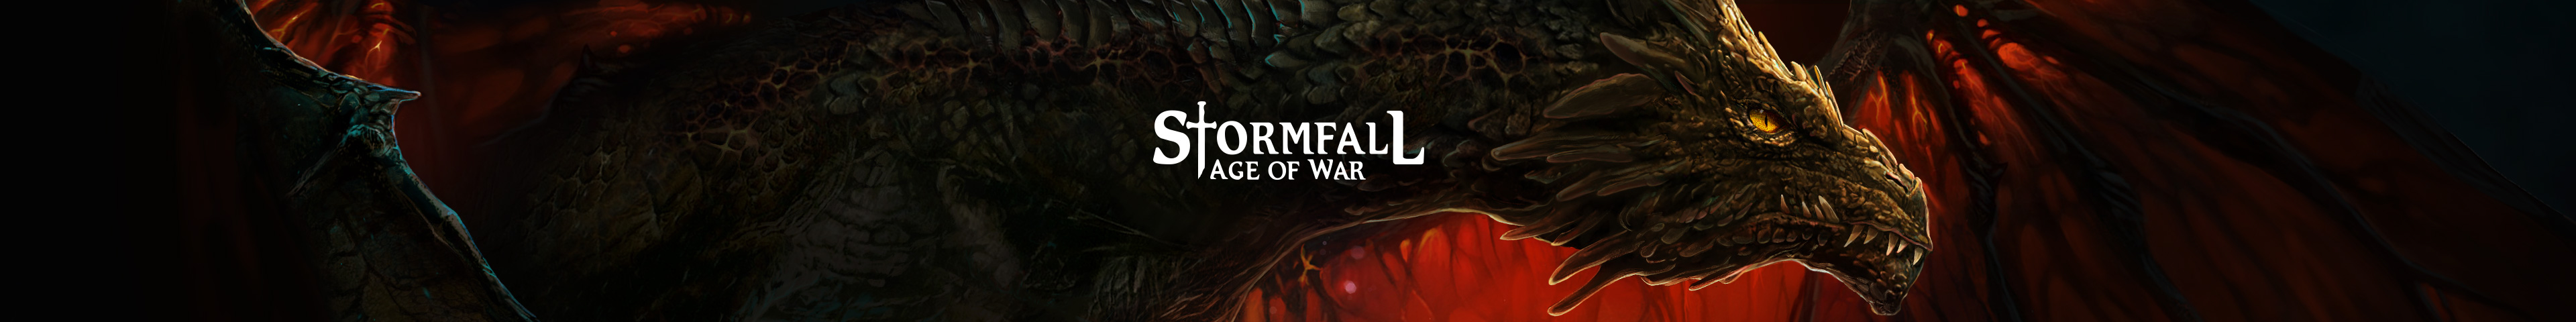 Stormfall: Age of War - EN